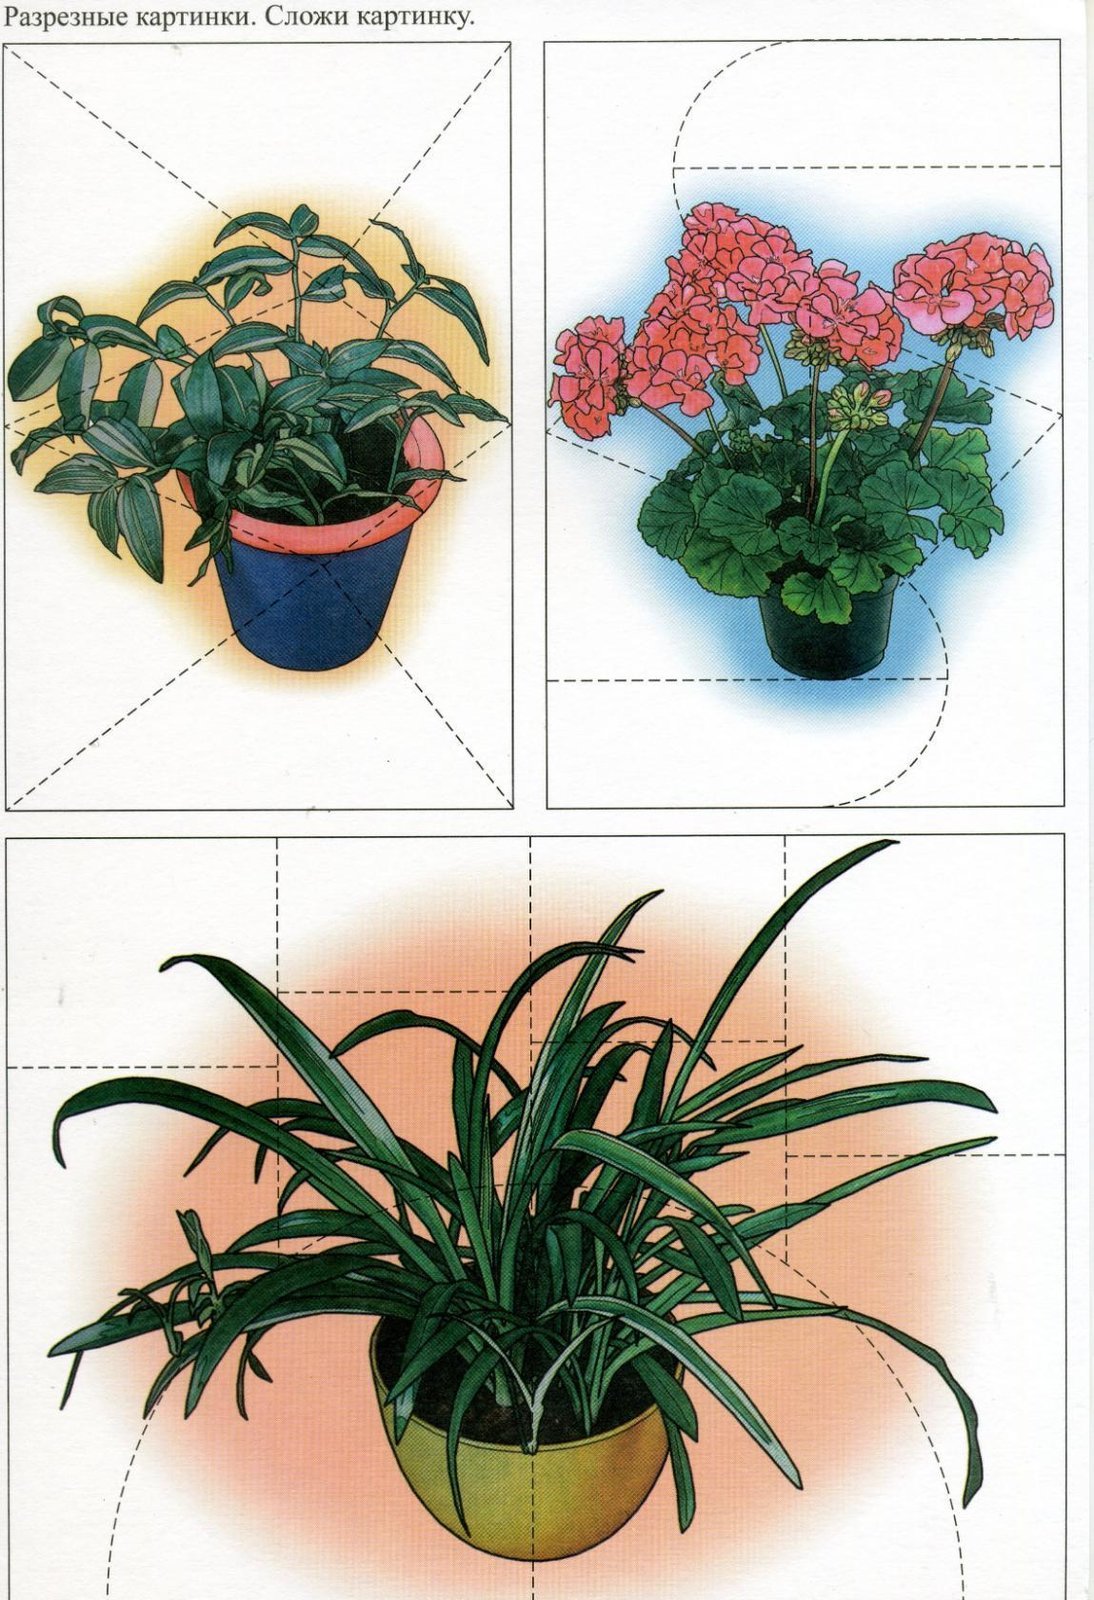 Узнать комнатное растение по фото